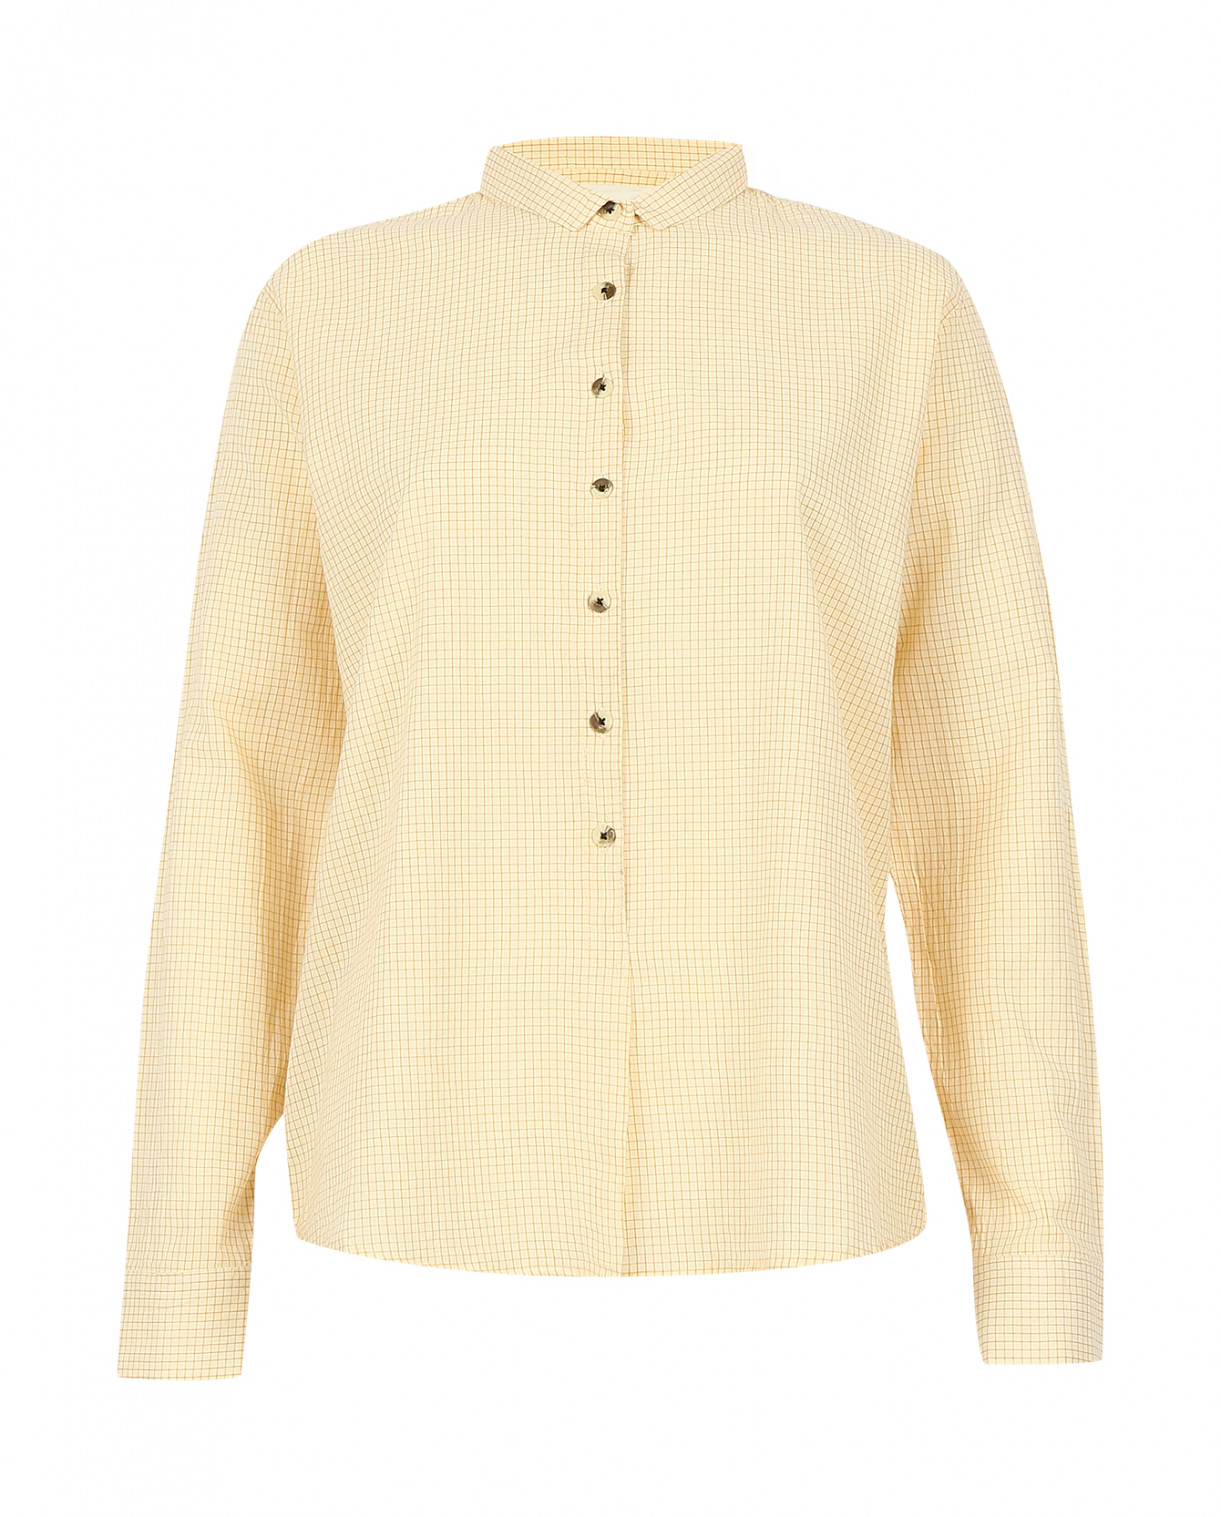 Рубашка из хлопка в клетку с контрастными пуговицами Leon&Harper  –  Общий вид  – Цвет:  Желтый